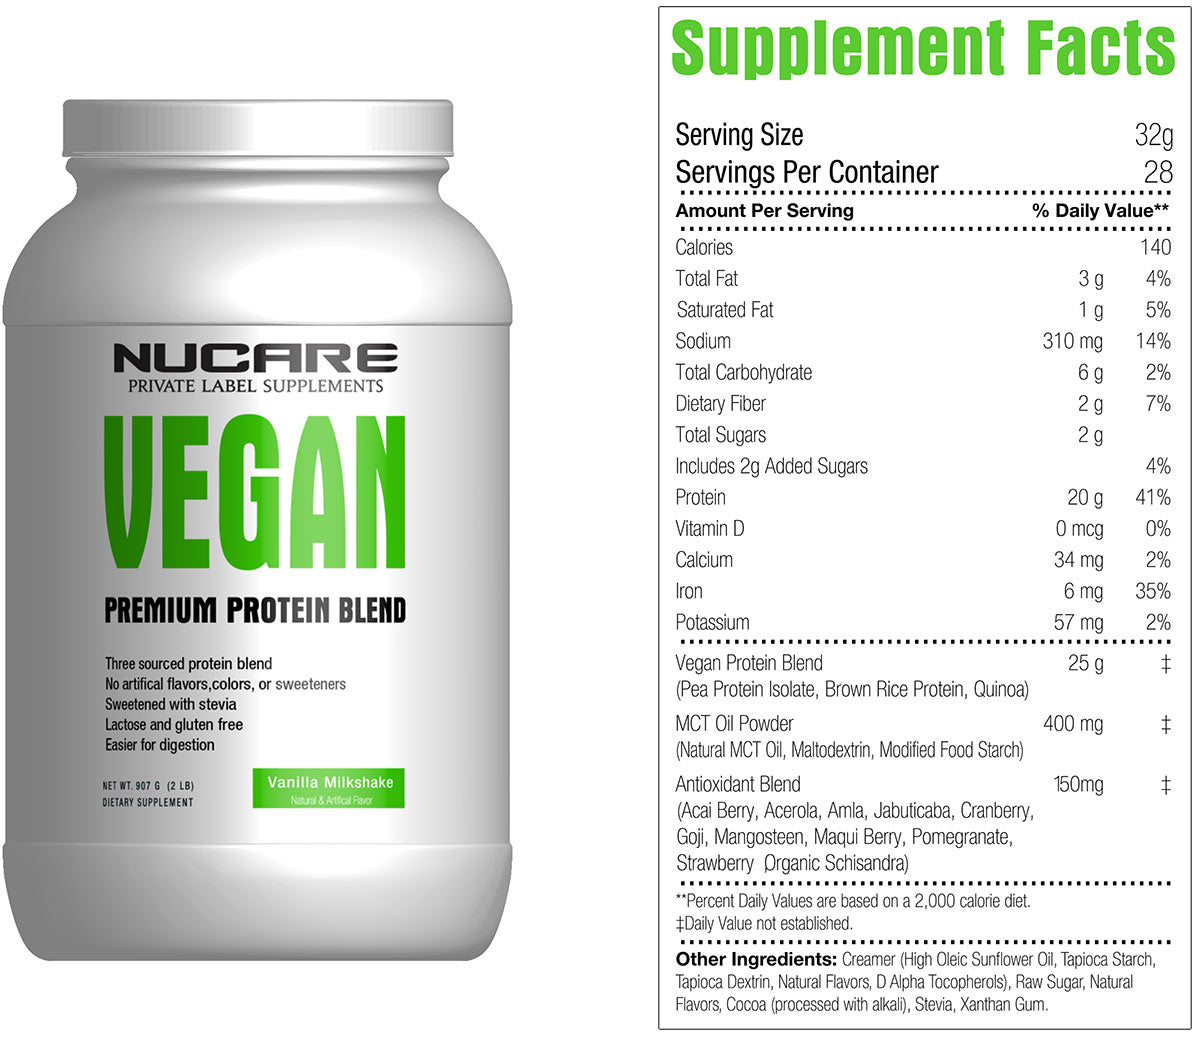 Vegan Premium Protein Blend, 2lb